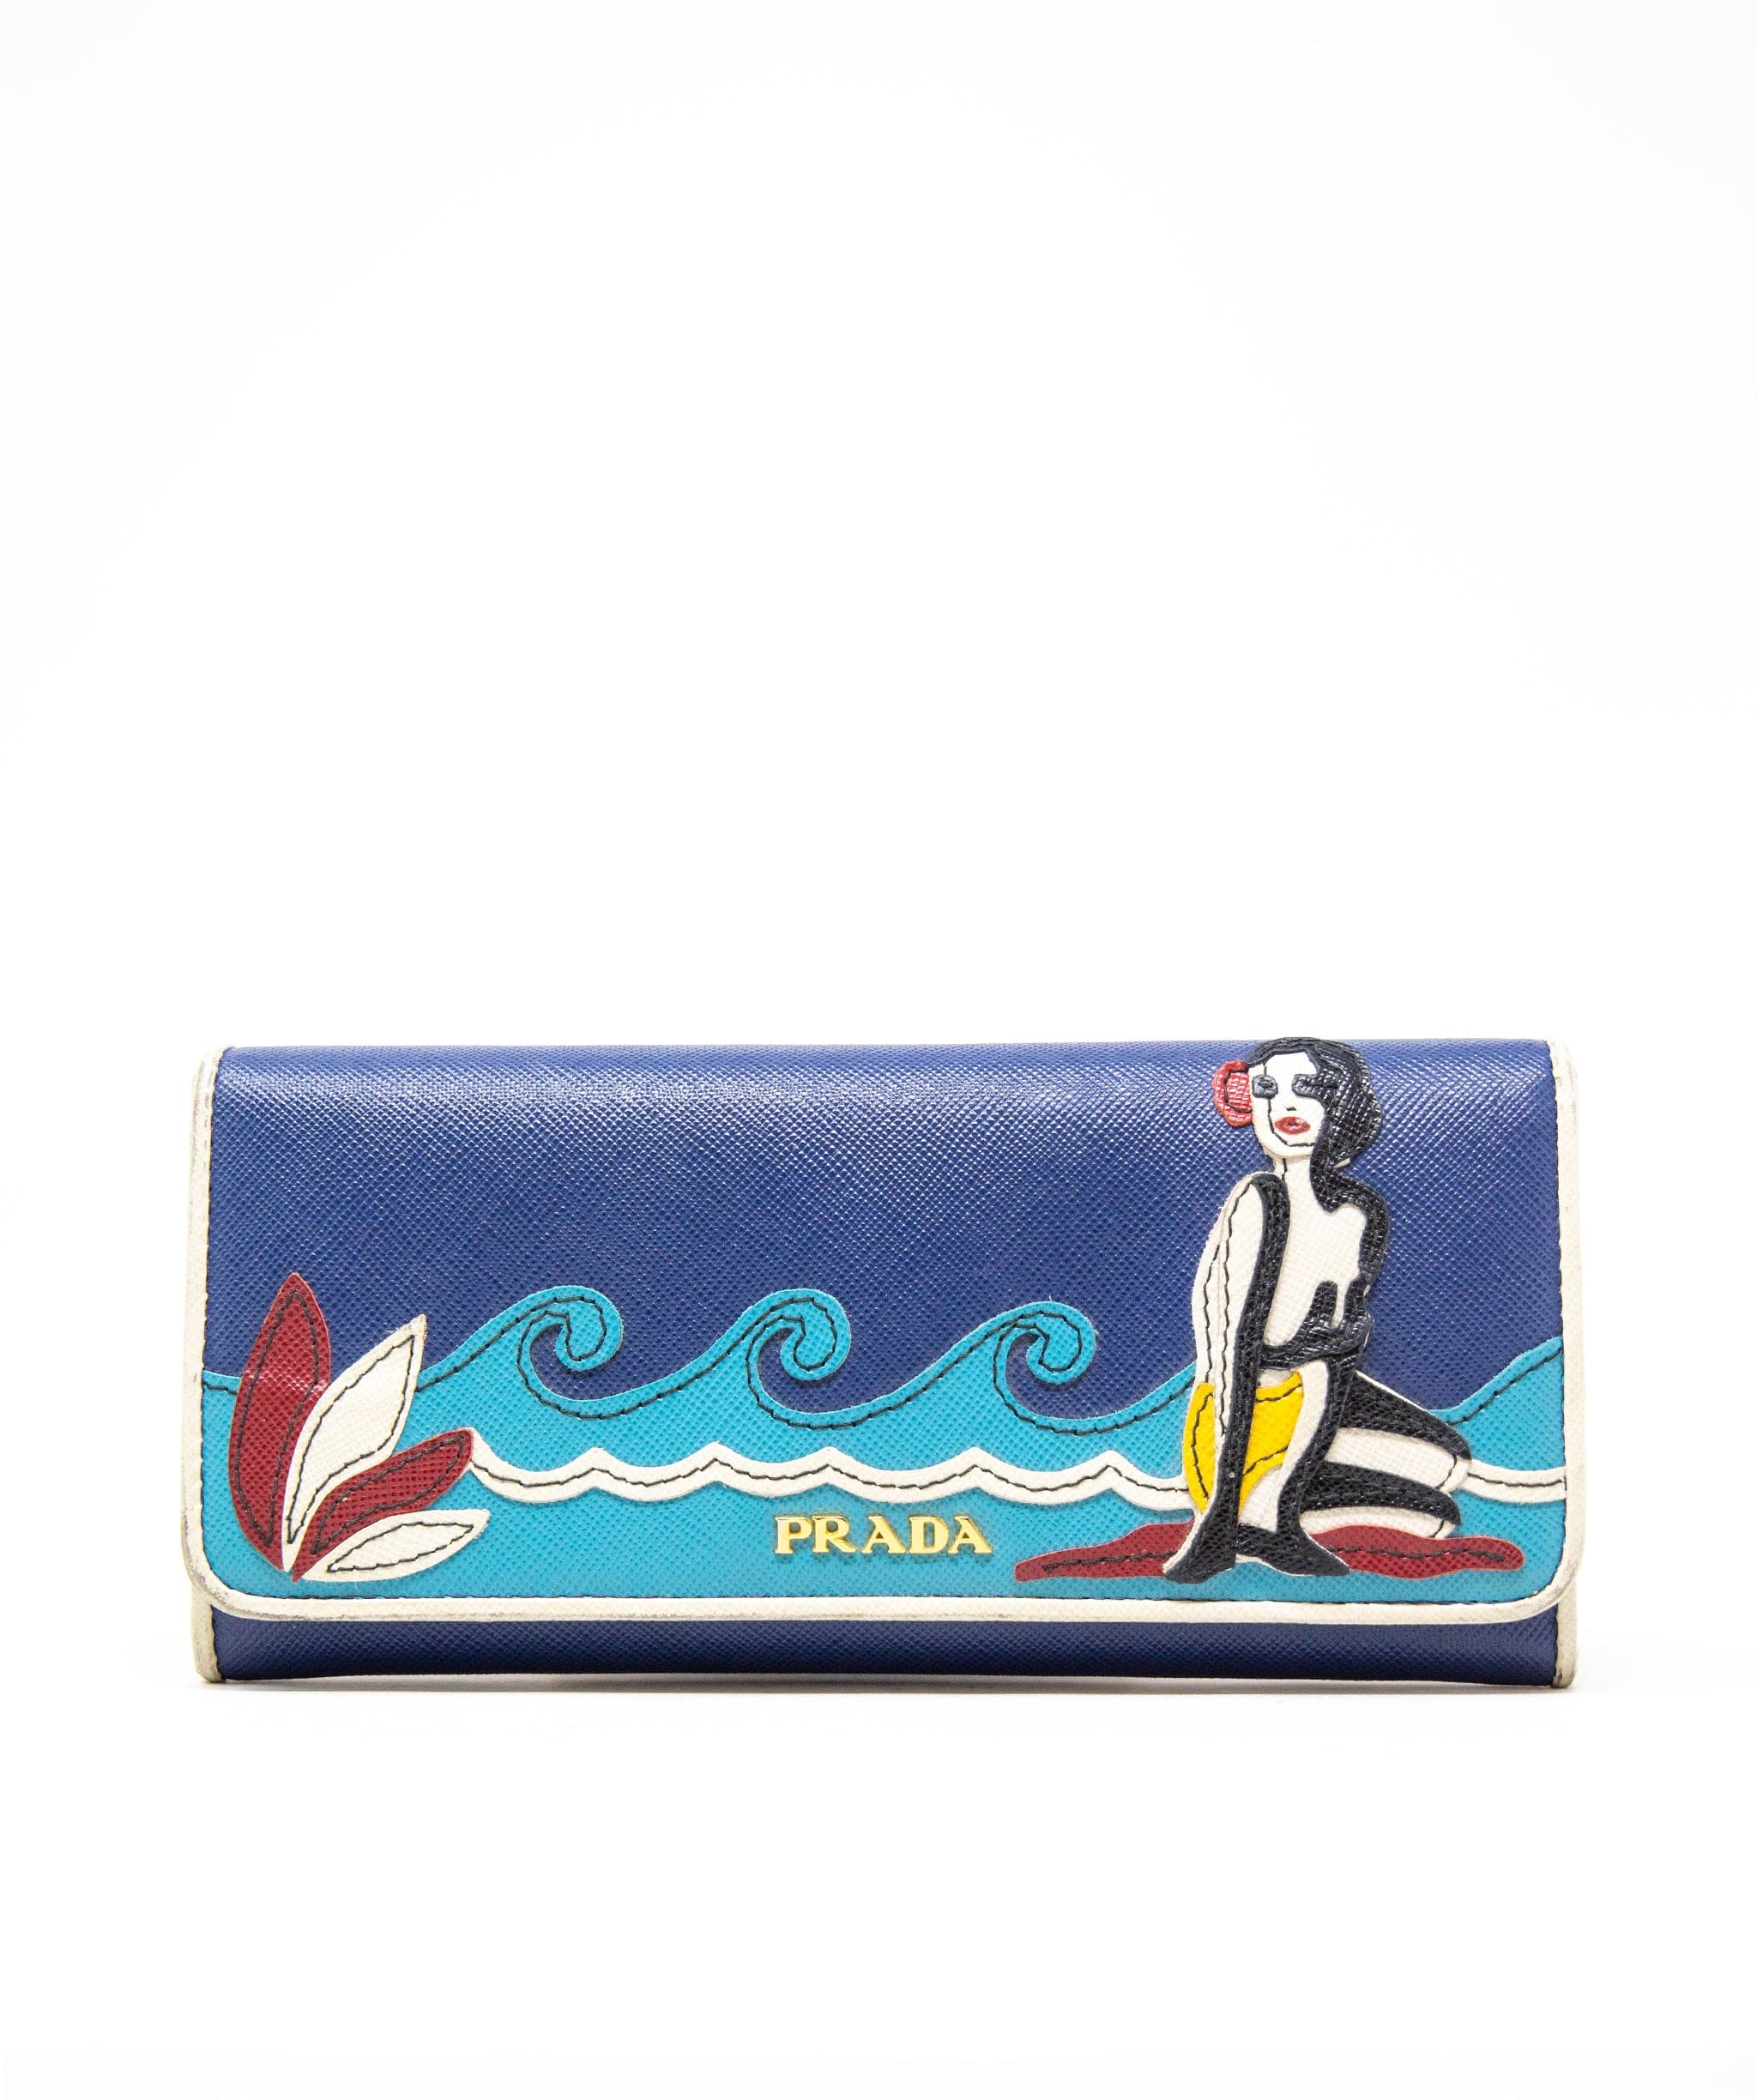 Prada Prada wallet ASL3582